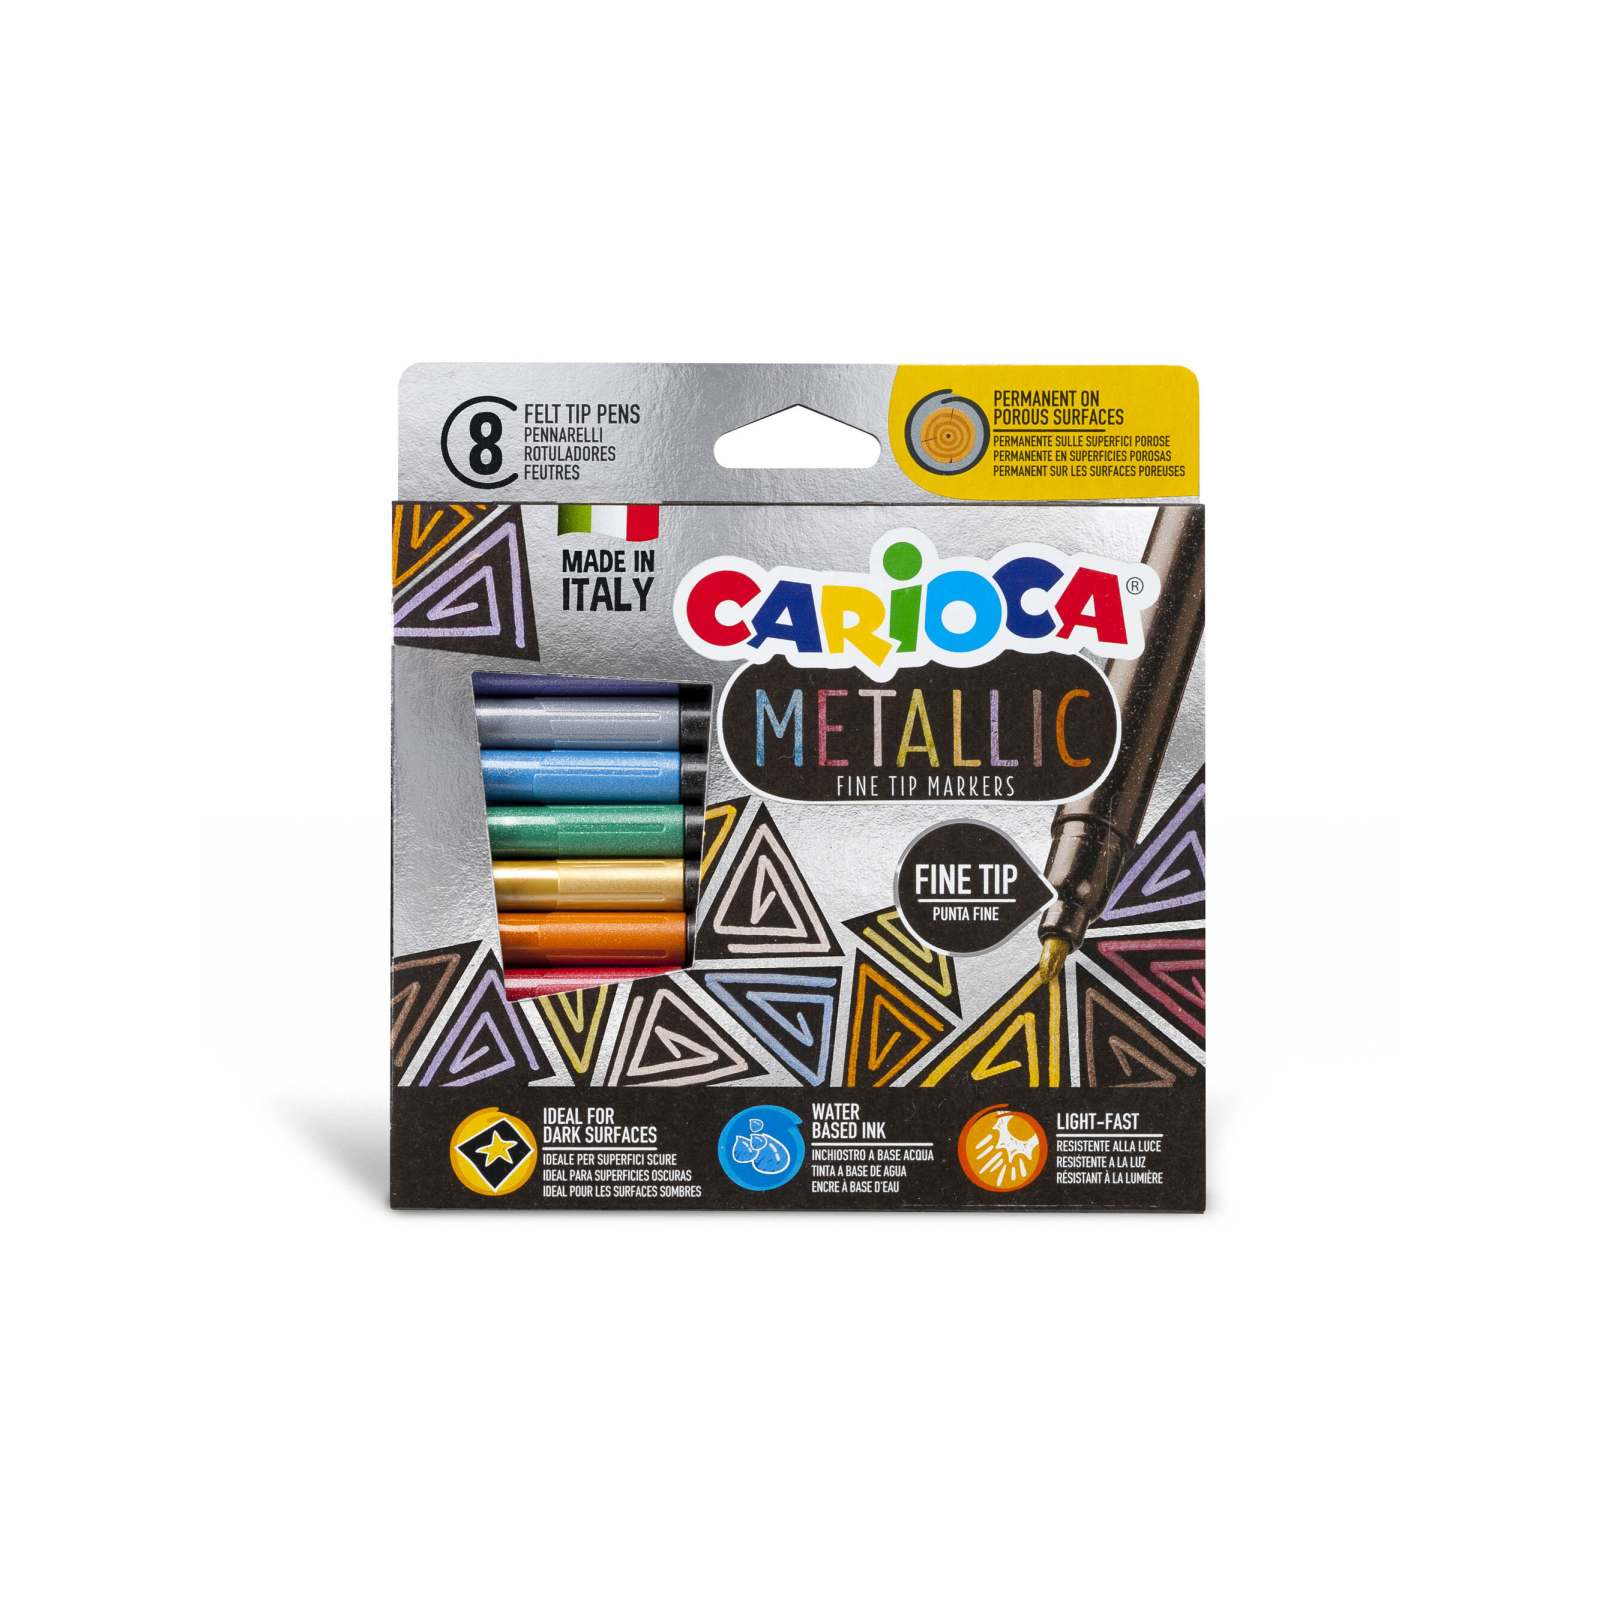 Carioca pennarelli metallic punta fine scatola da 8 pezzi, prodotto adatto ai bambini a partire da +4 anni, codice prodotto 43162 - 